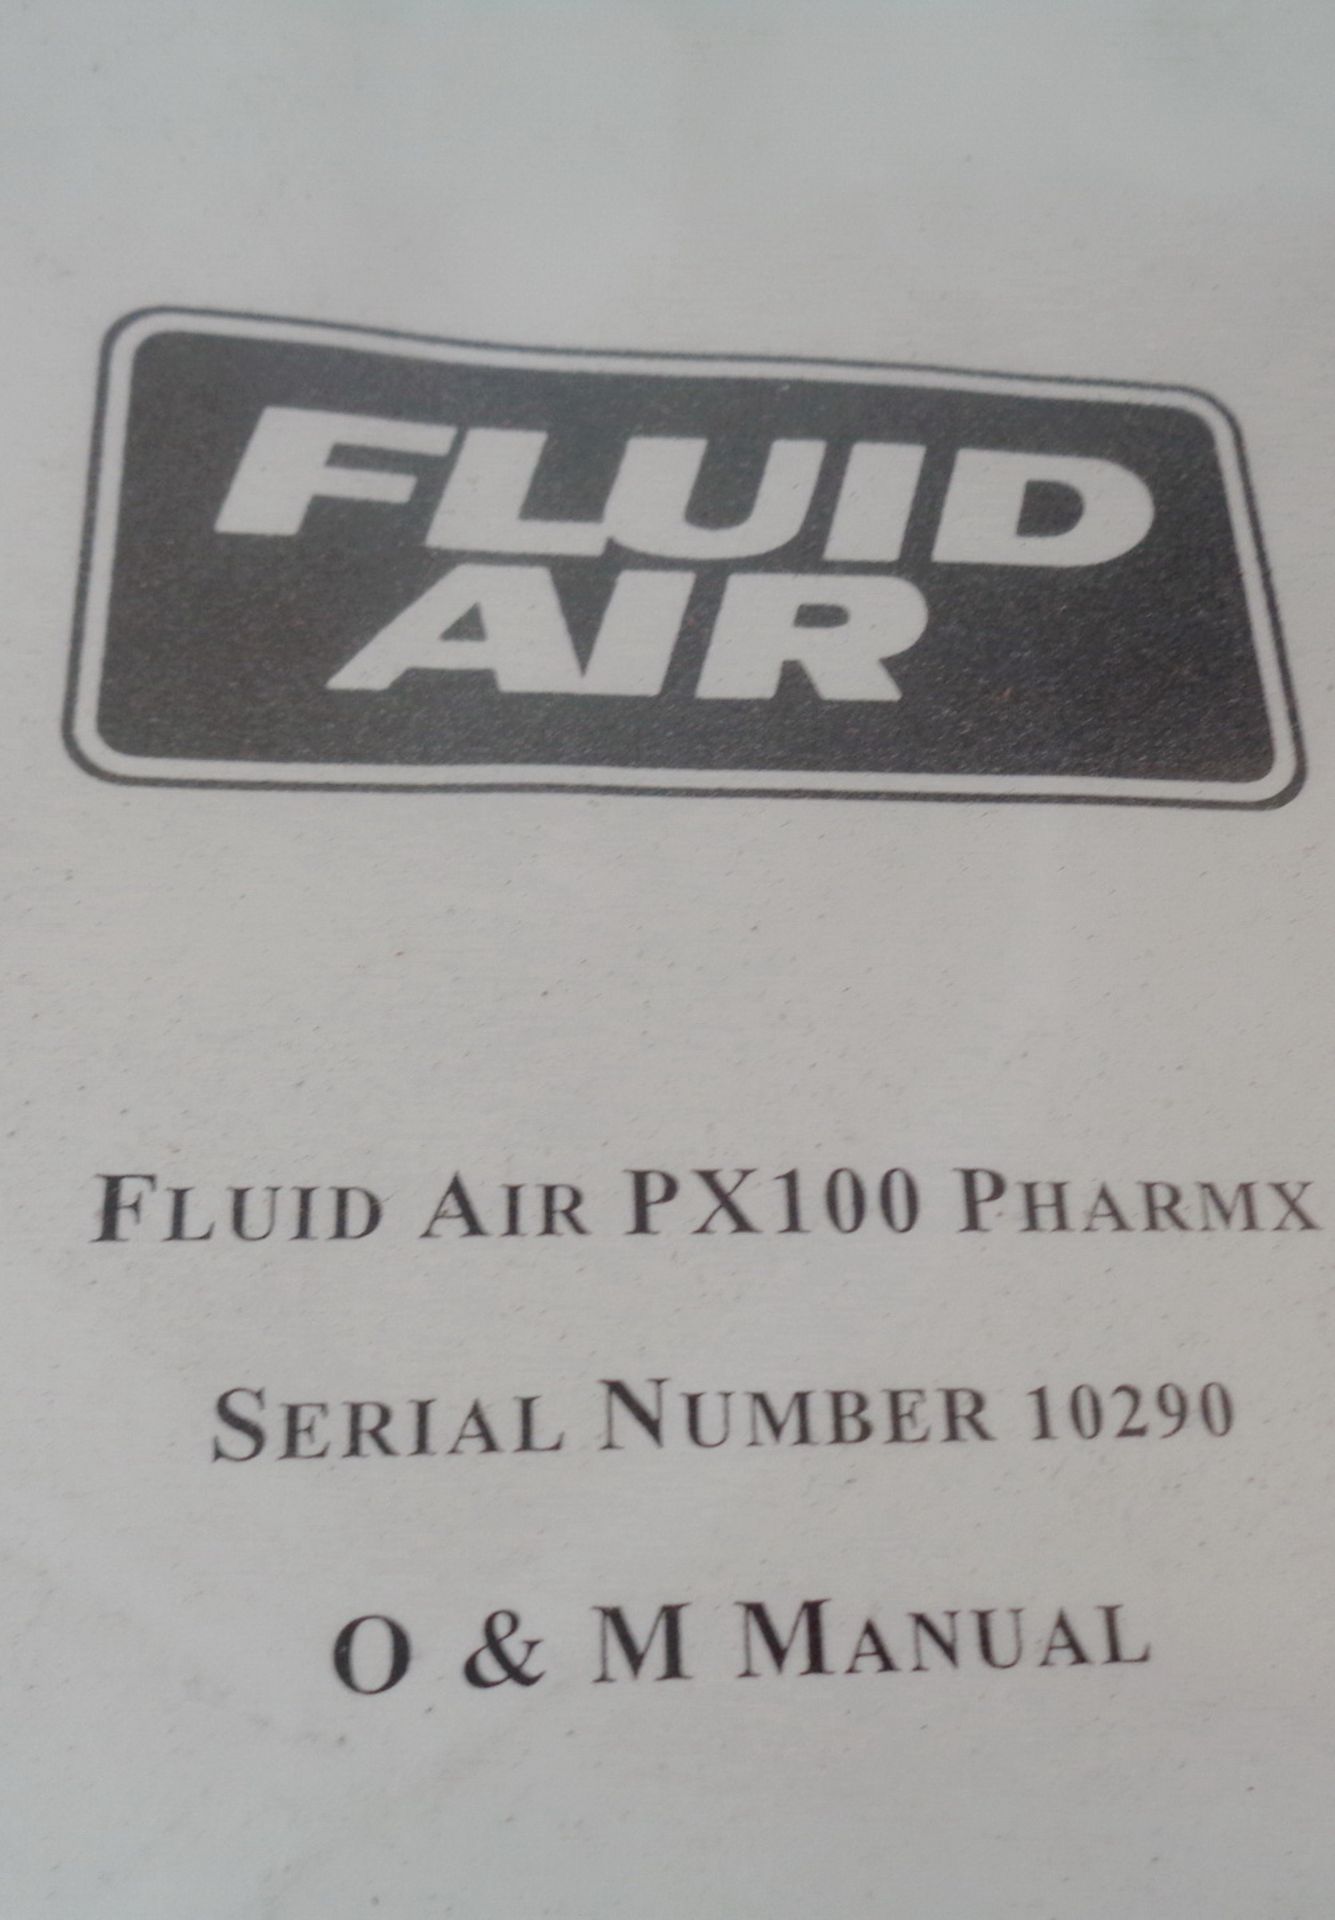 Fluid Air Stainless Steel High Shear Granulator, Model PX100 Pharmx, S/N 10290 - Image 11 of 12